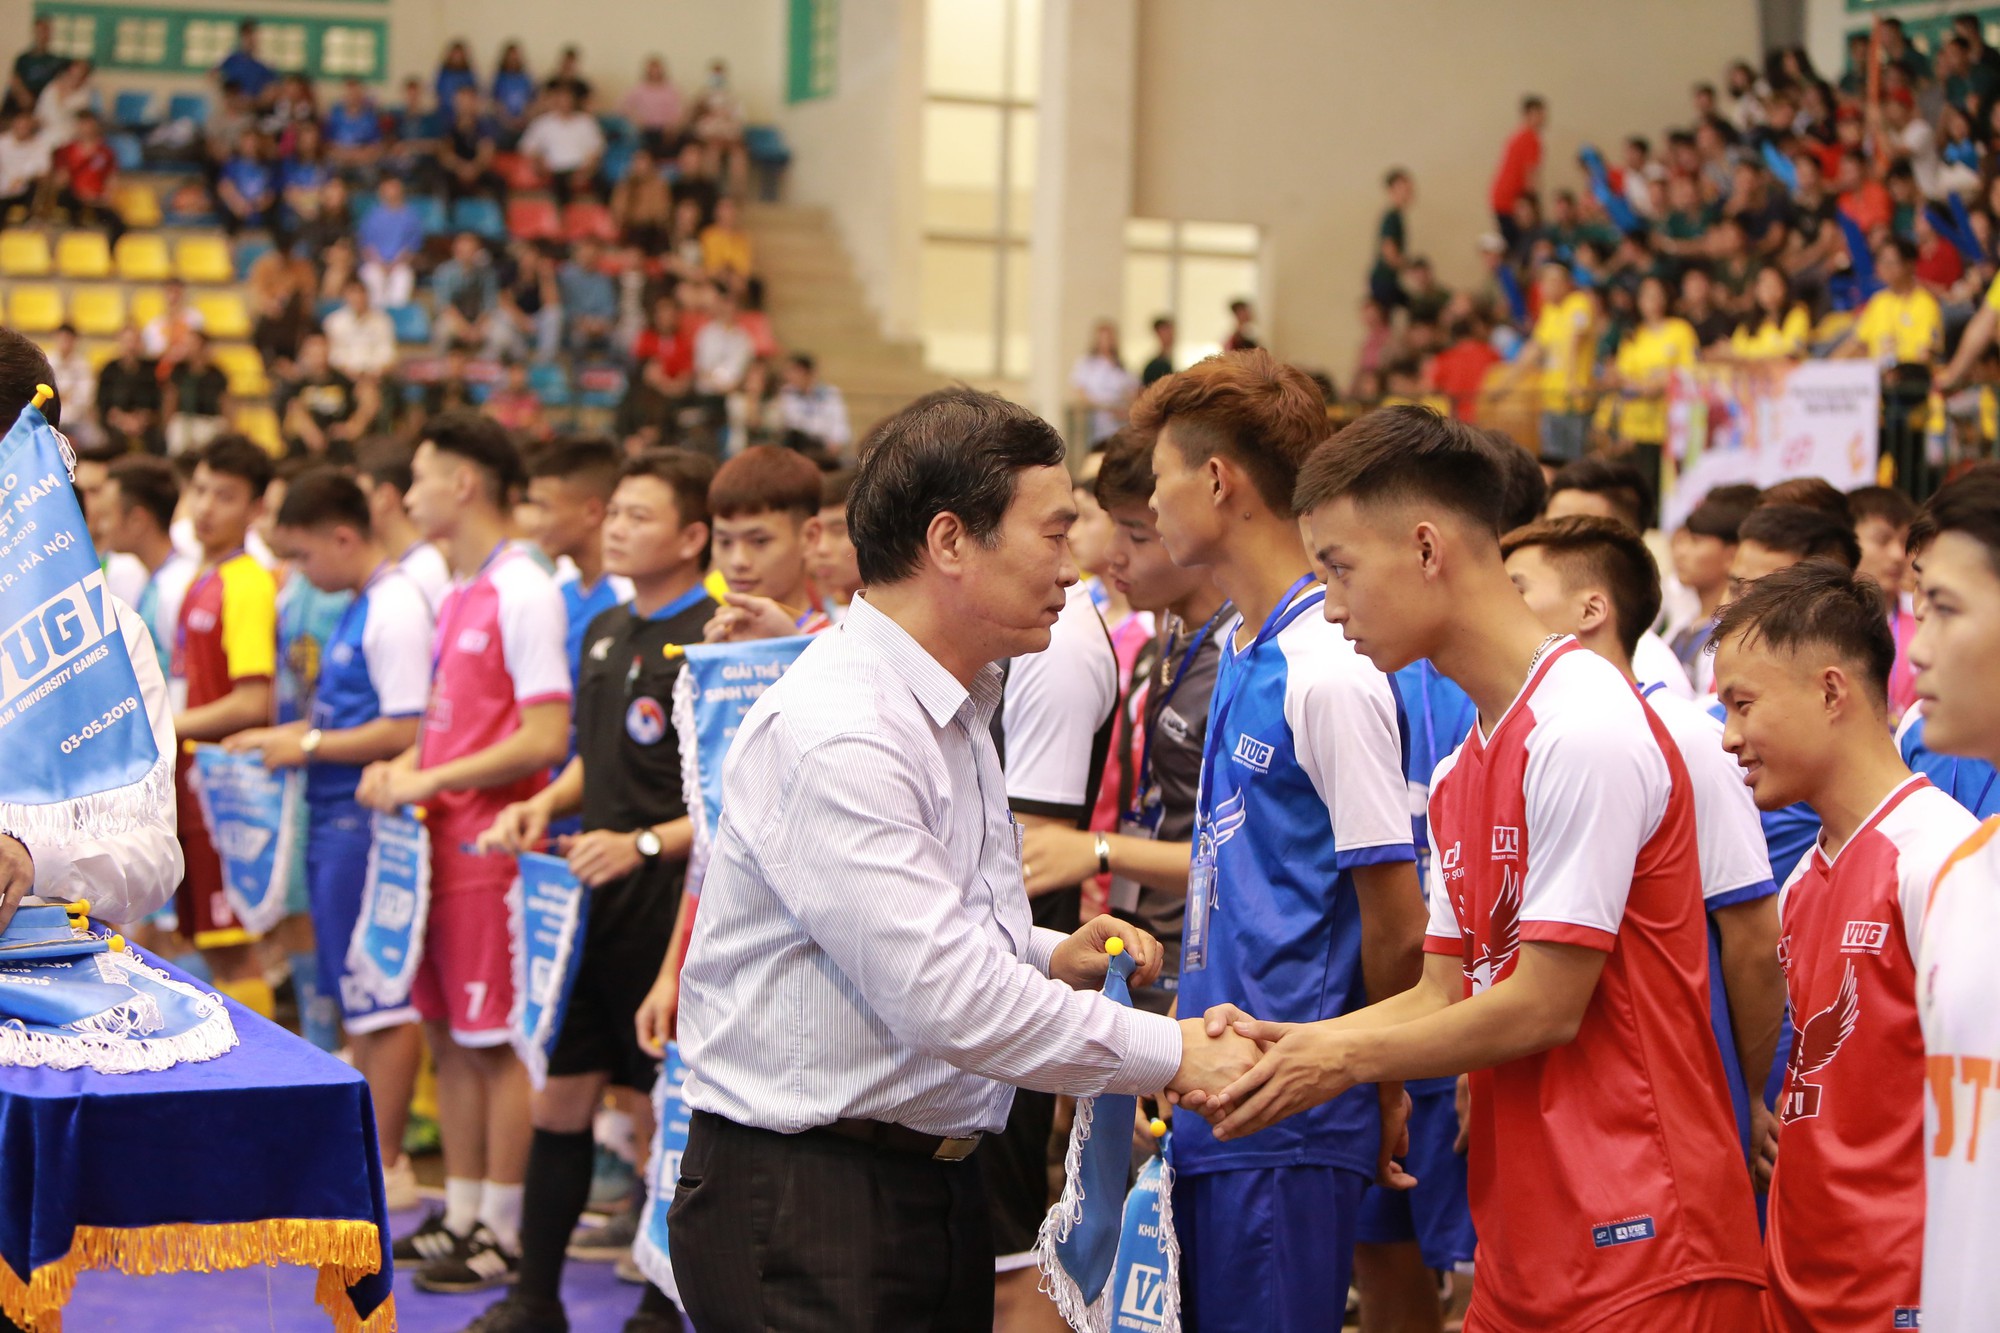 VUG - Giải thể thao lớn nhất dành cho sinh viên Việt Nam chính thức khởi tranh - Ảnh 2.